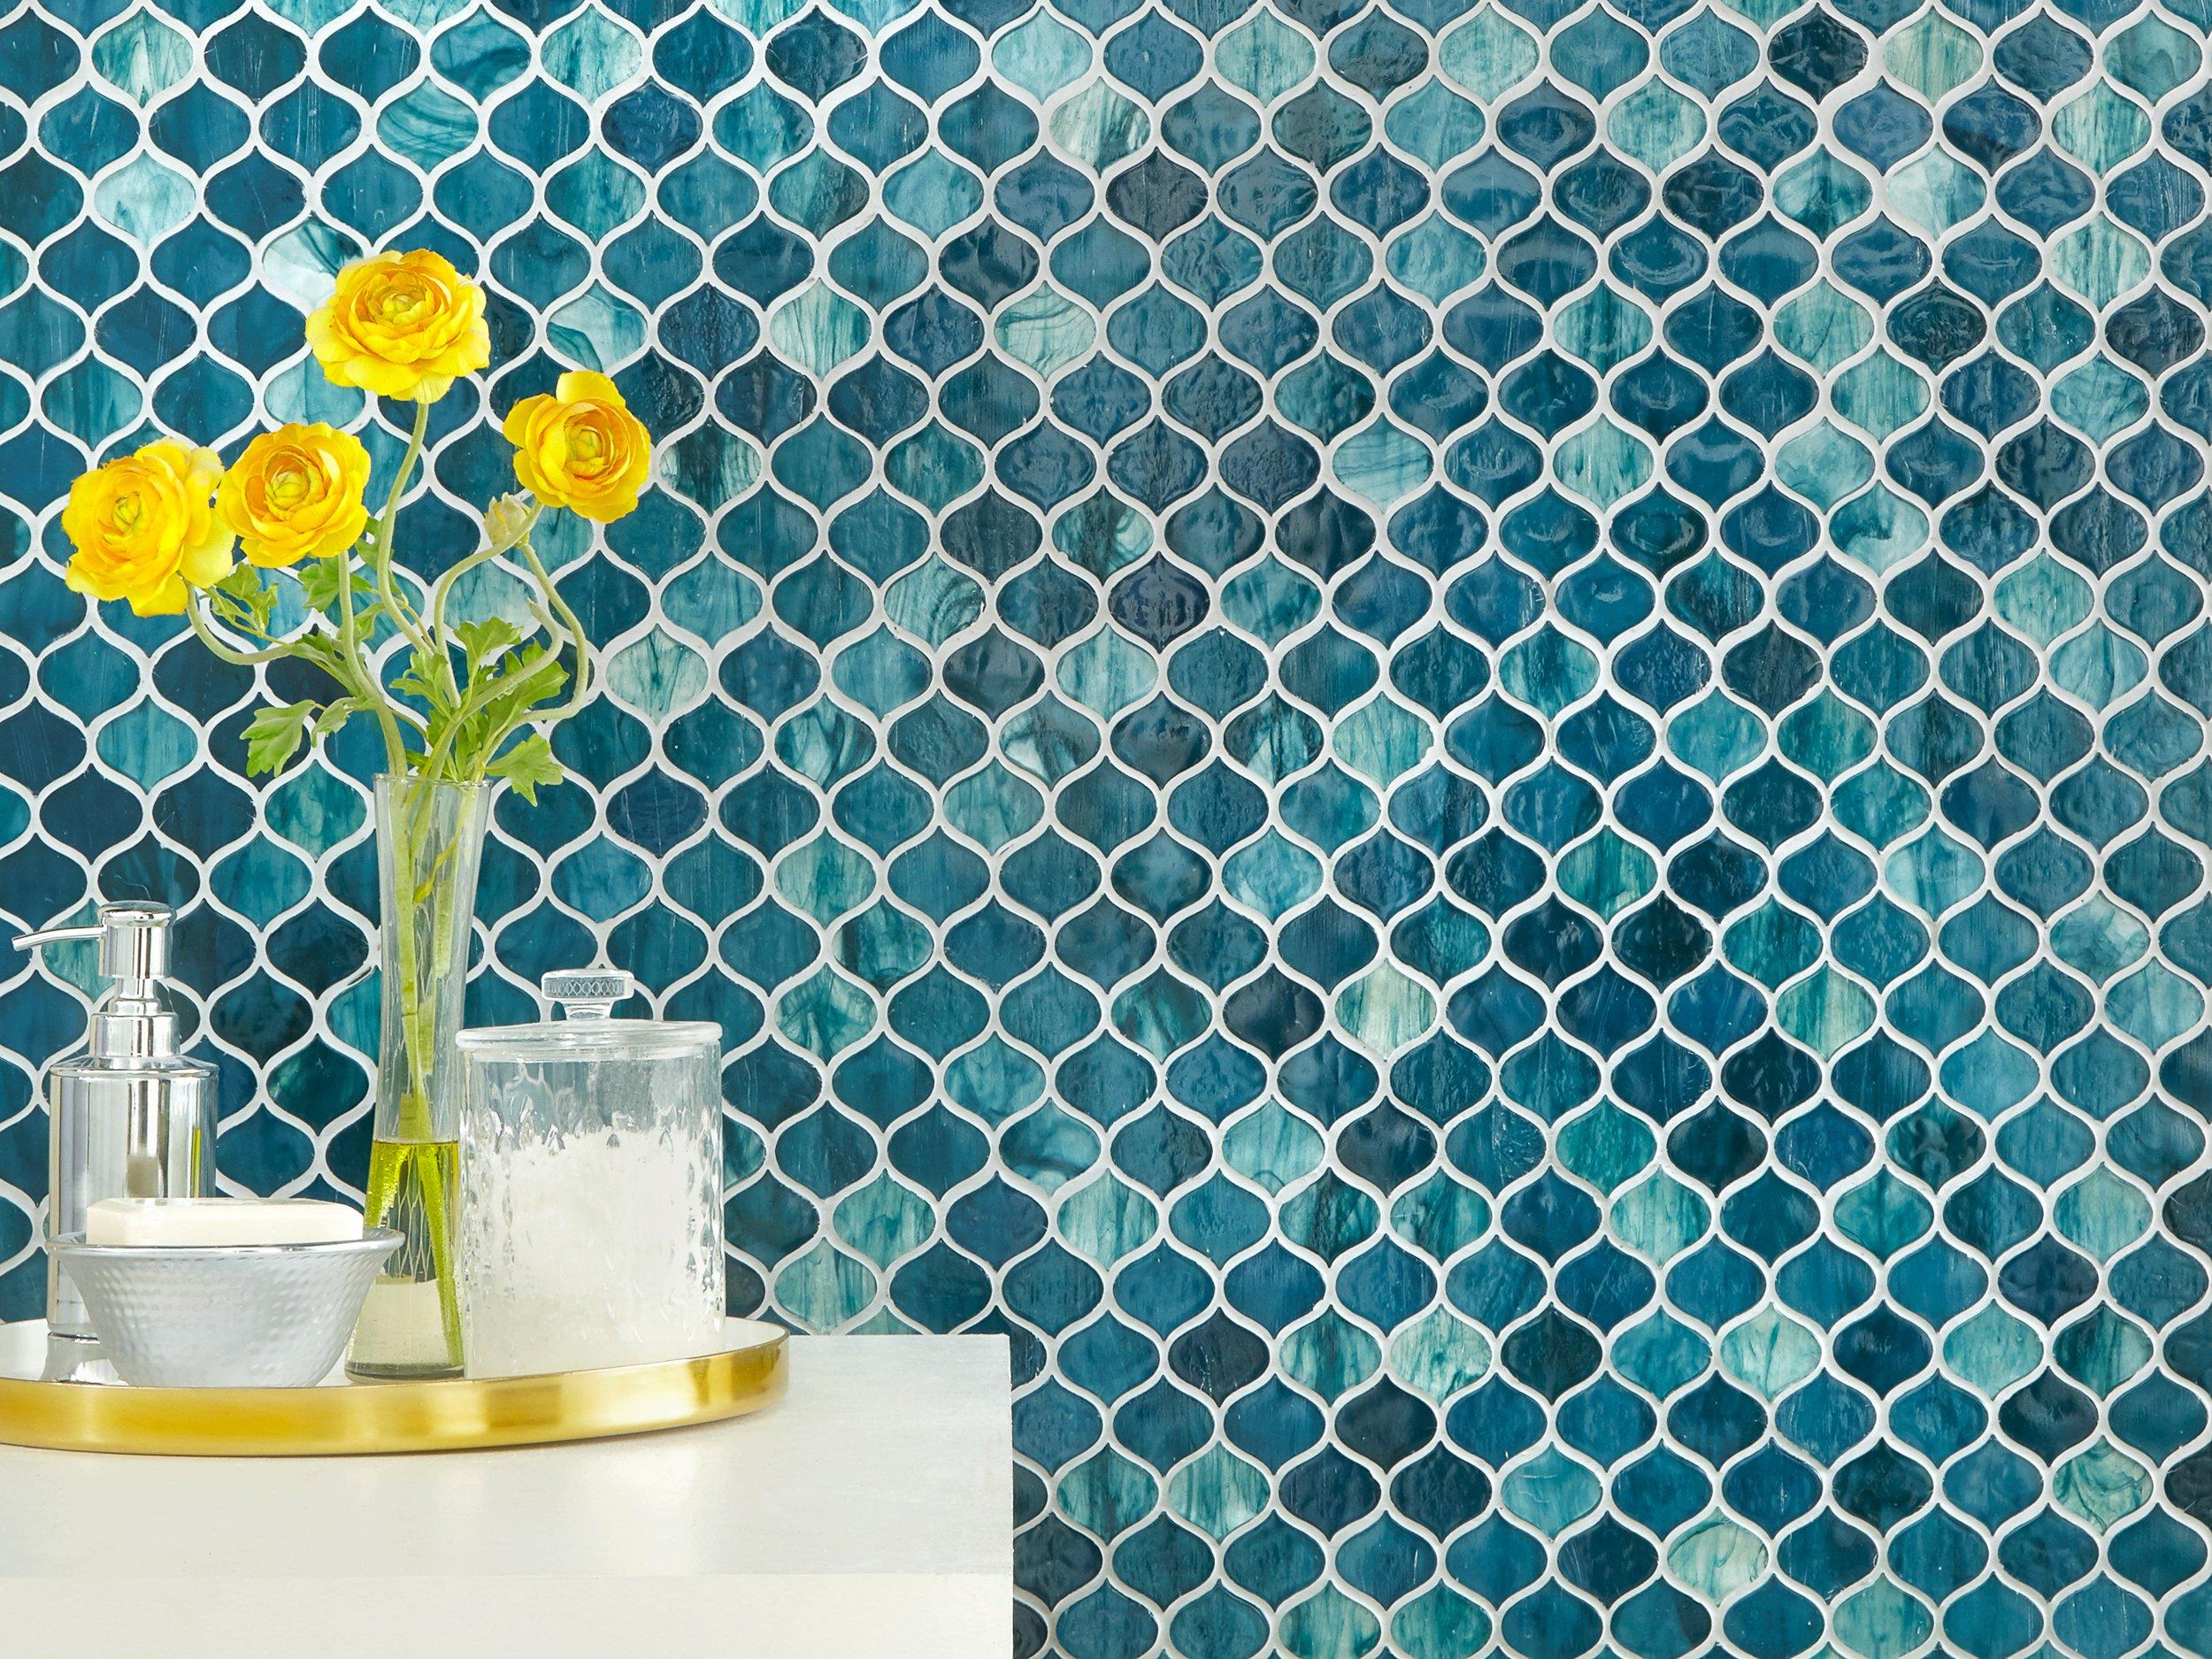 Marina Del Ray Arabesque Glass Mosaic